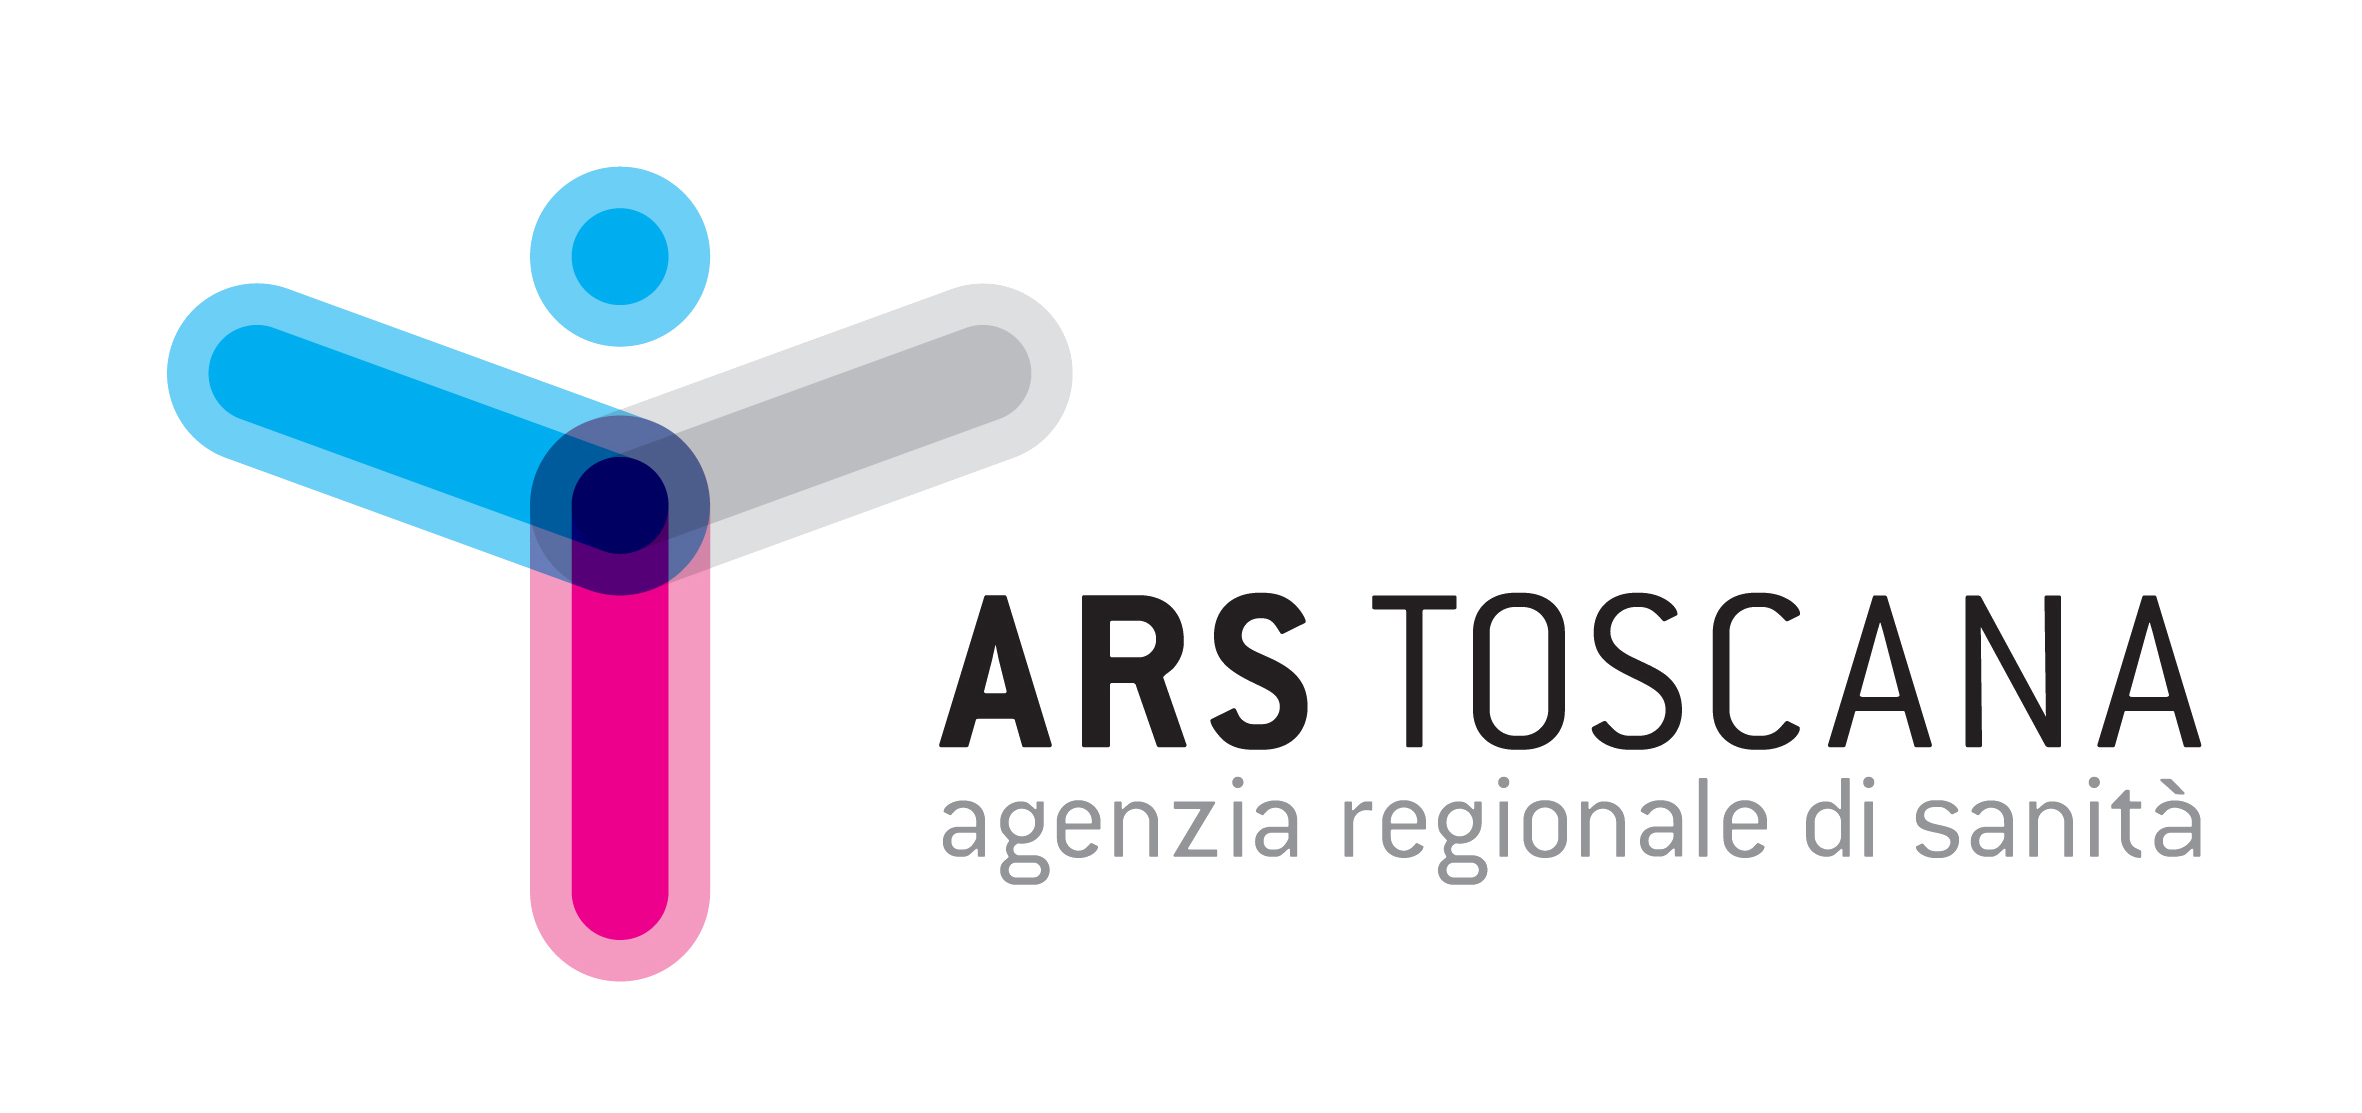 Agenzia regionale si sanità della Toscana